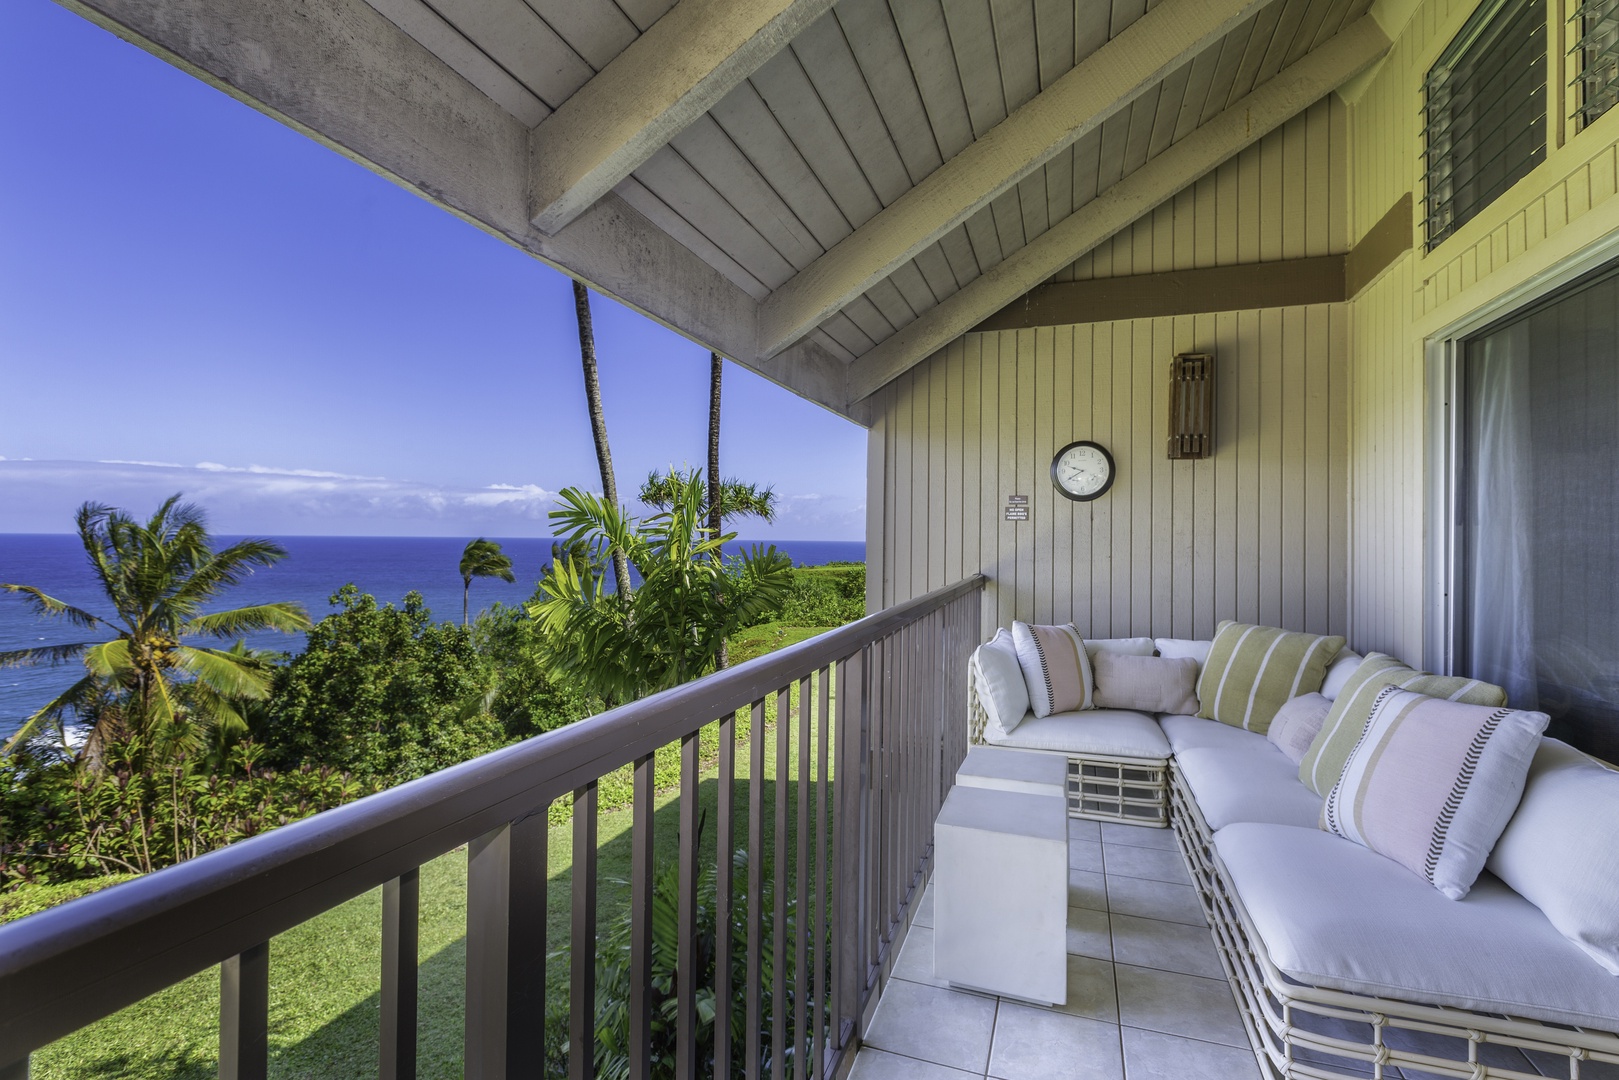 Princeville Vacation Rentals, Pali Ke Kua 207 - Private lanai for guaranteed relax